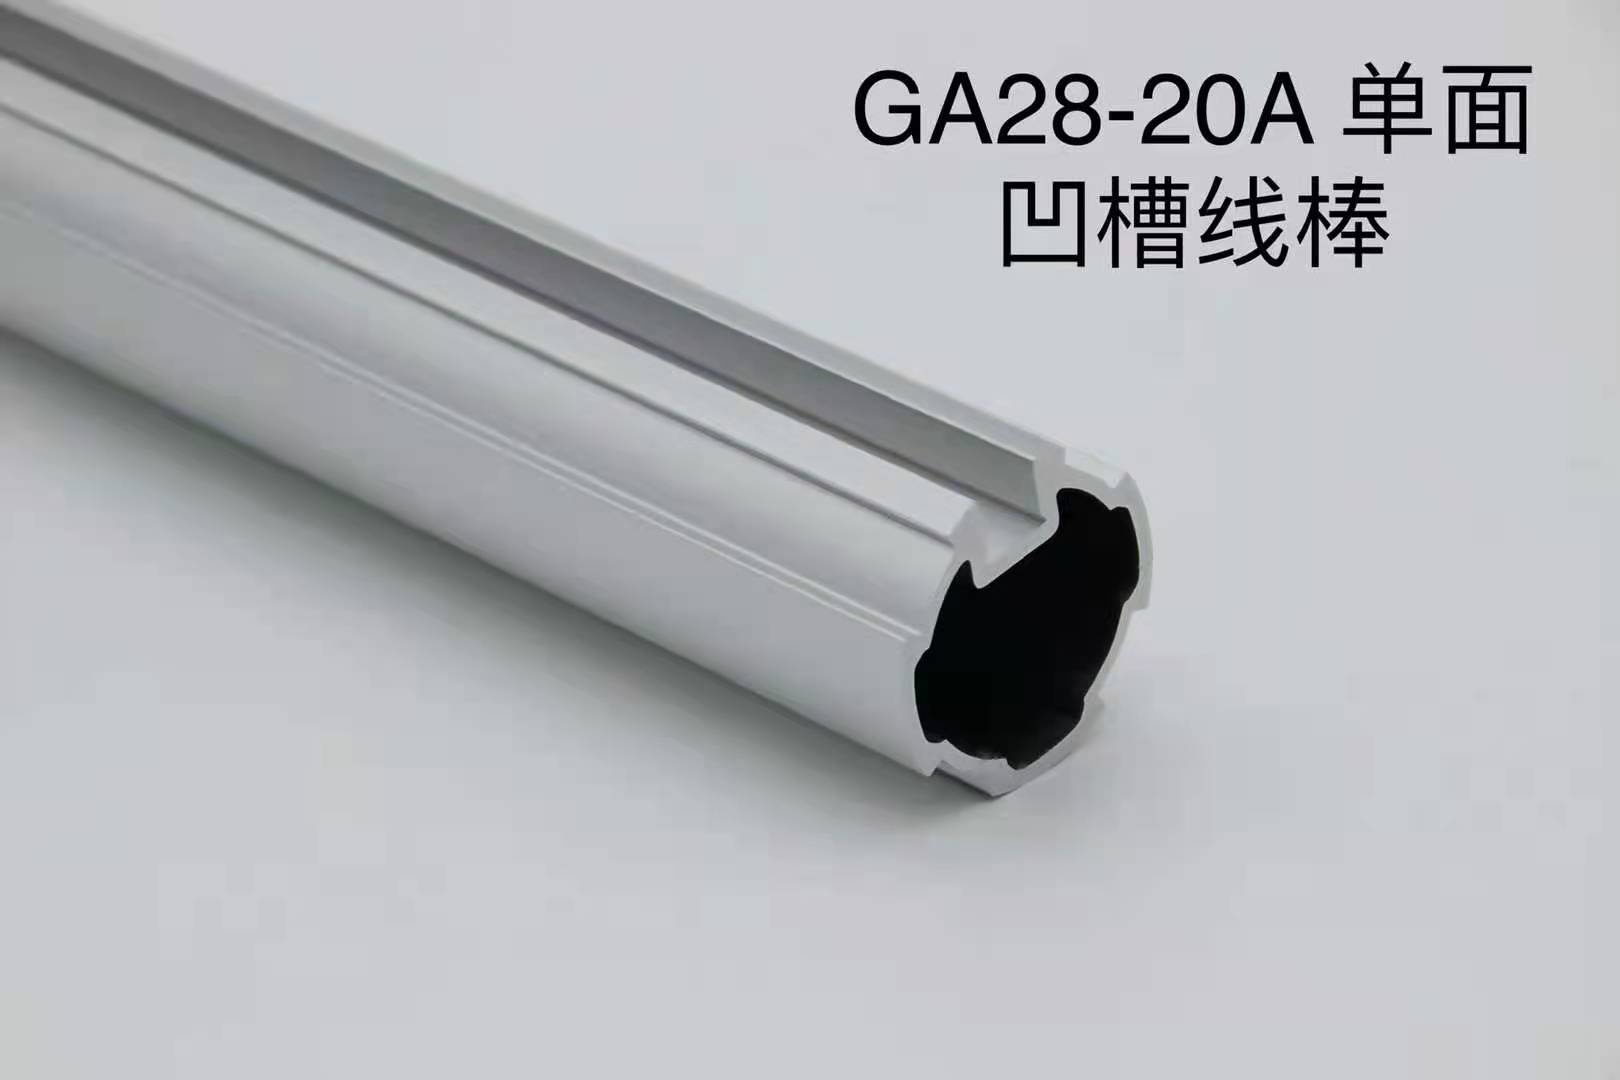 日照GA28-20A单面凹槽线棒